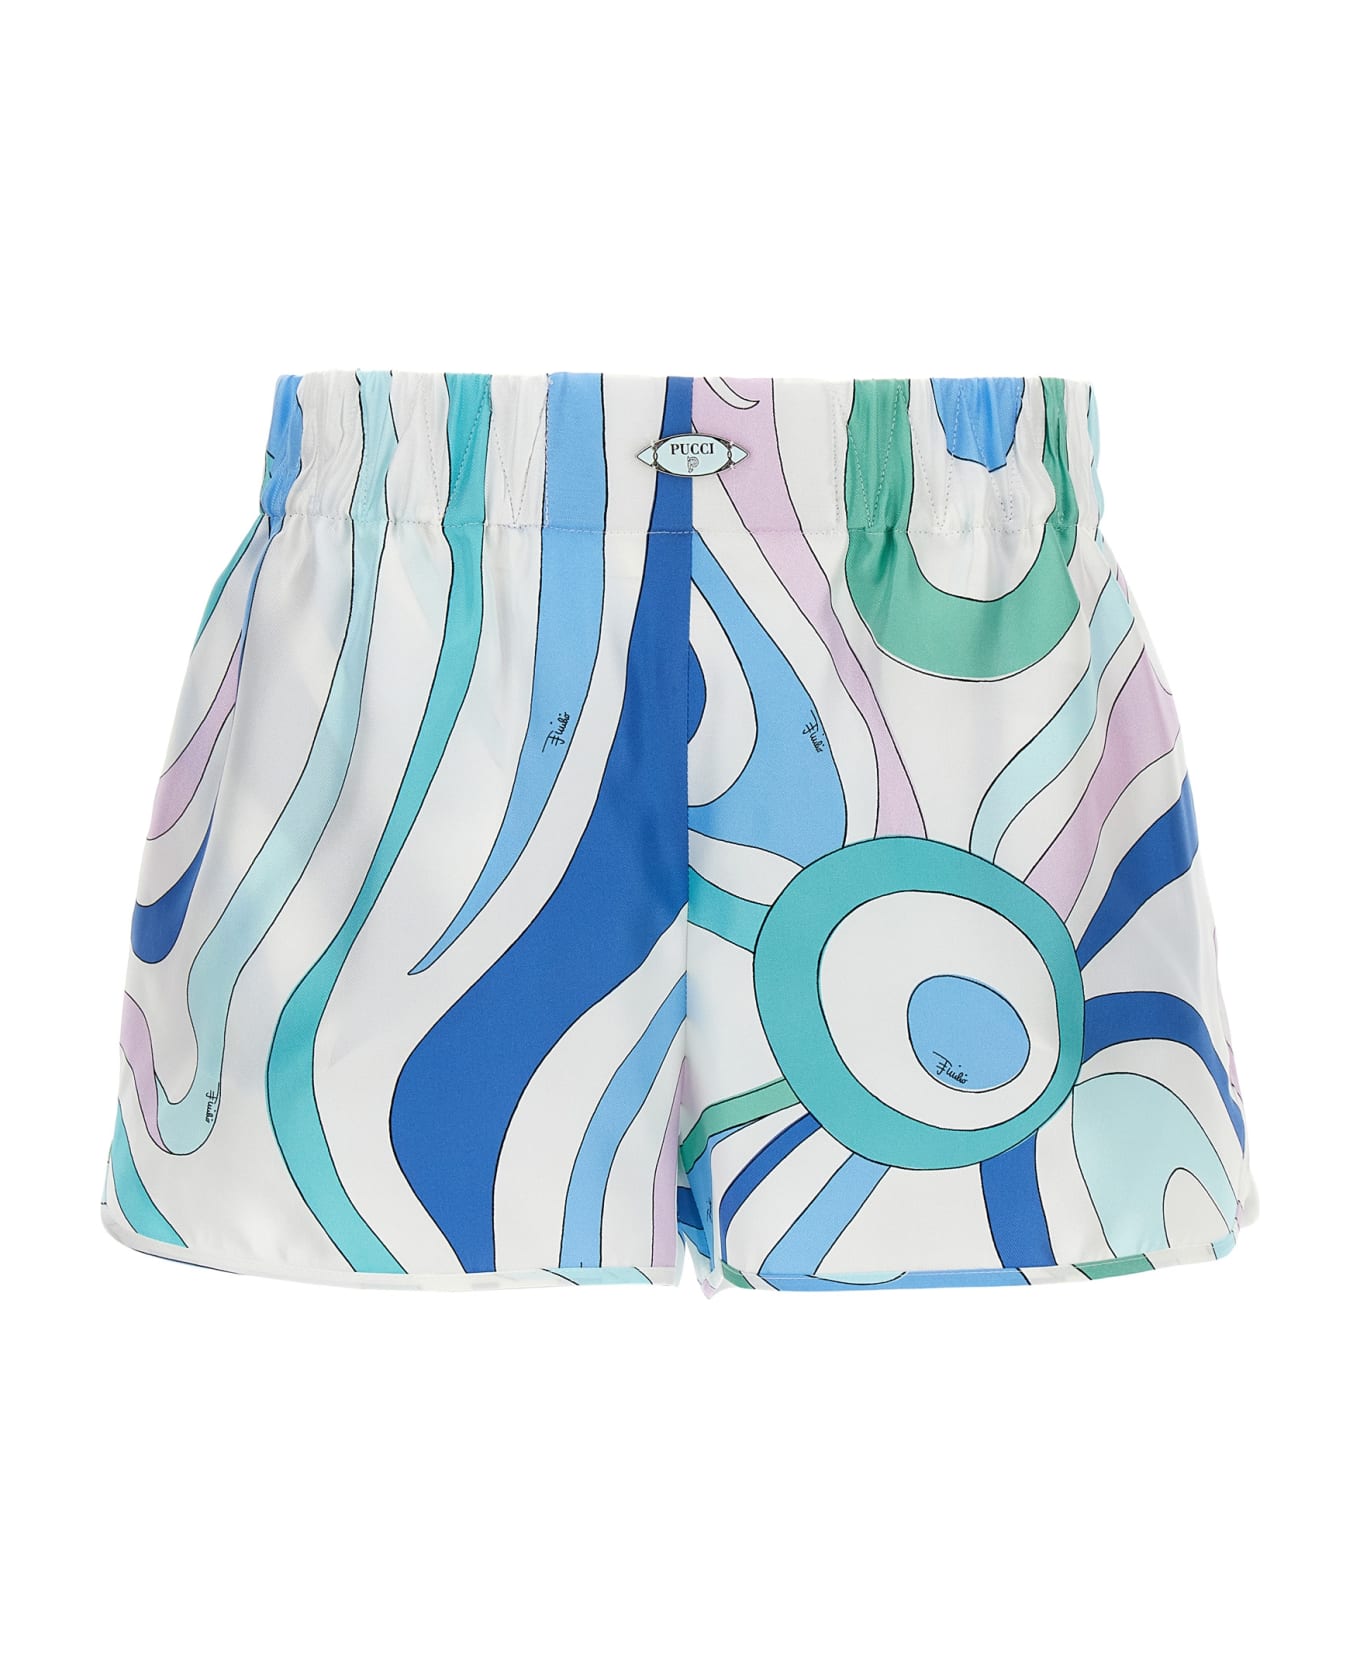 Pucci 'marmo' Shorts - Multicolor ショートパンツ